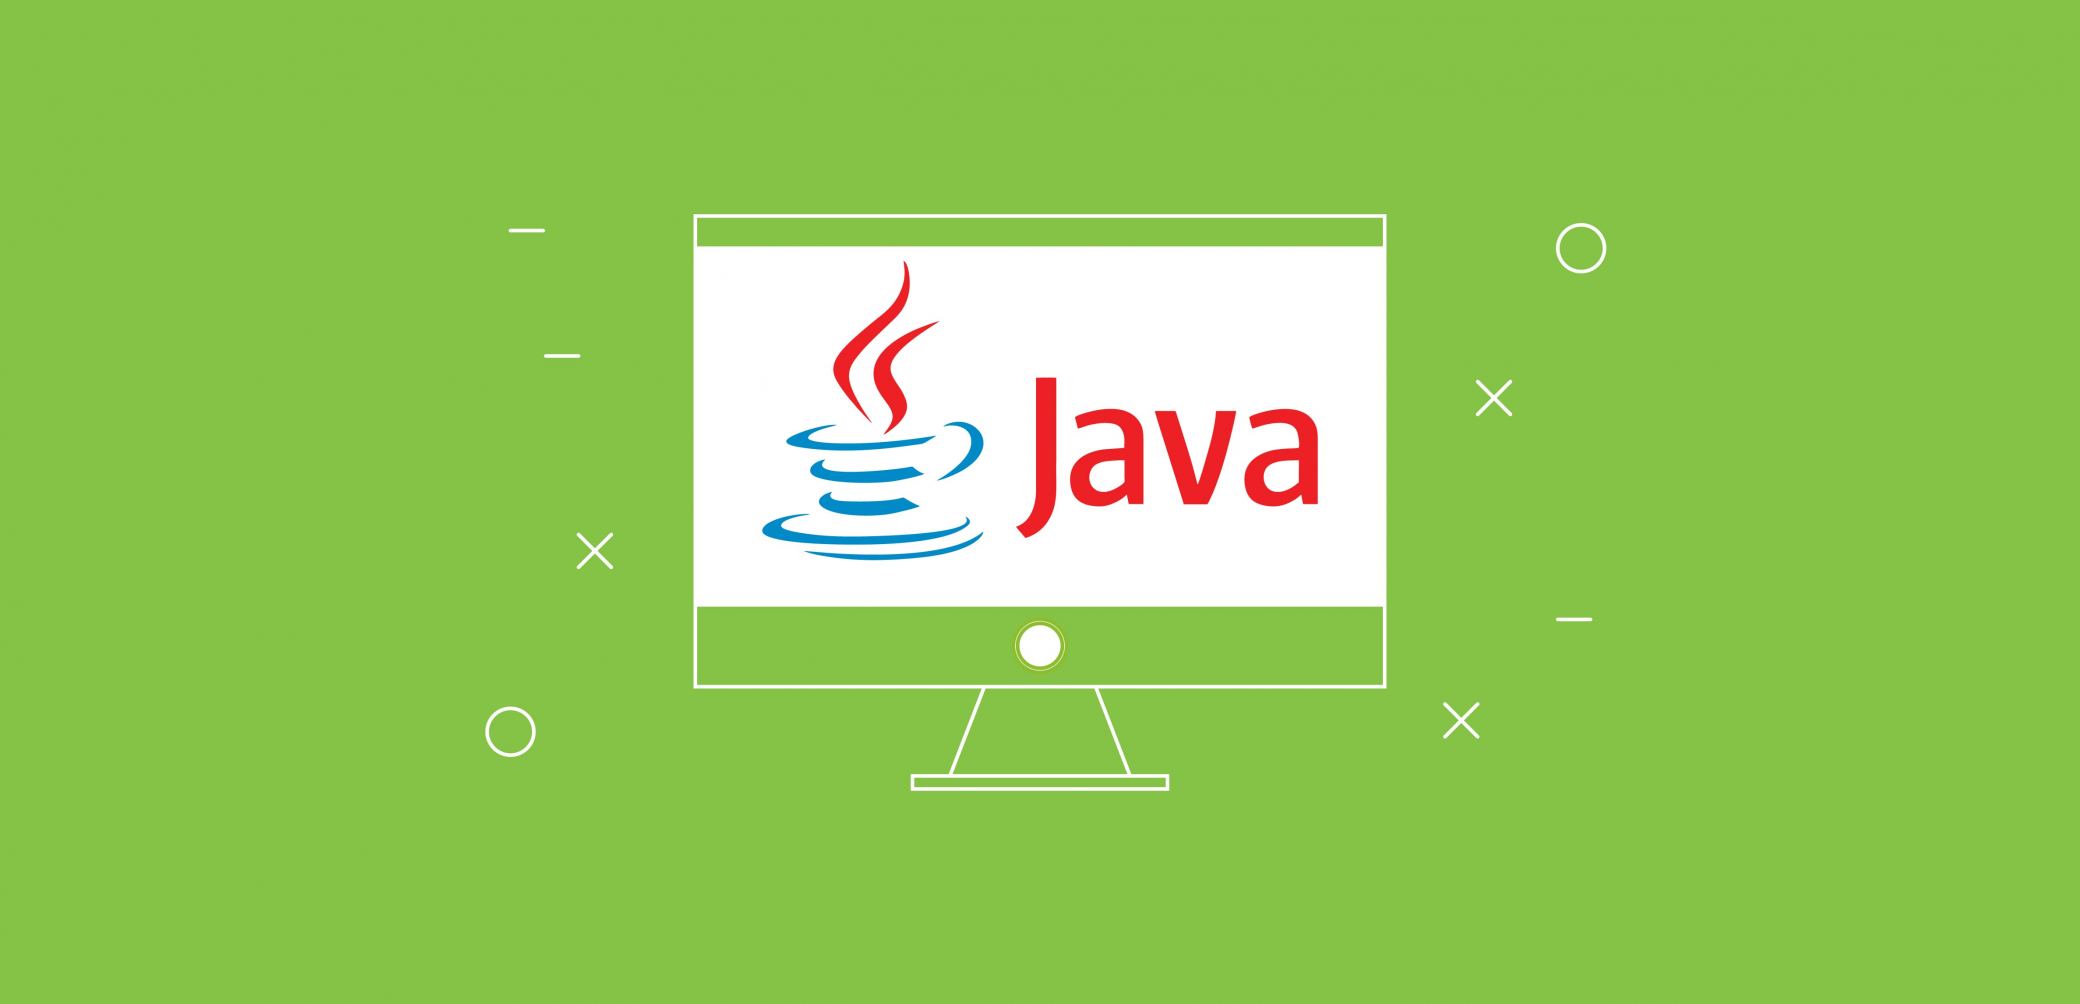 Java apre a infinite possibilità nello sviluppo di progetti software